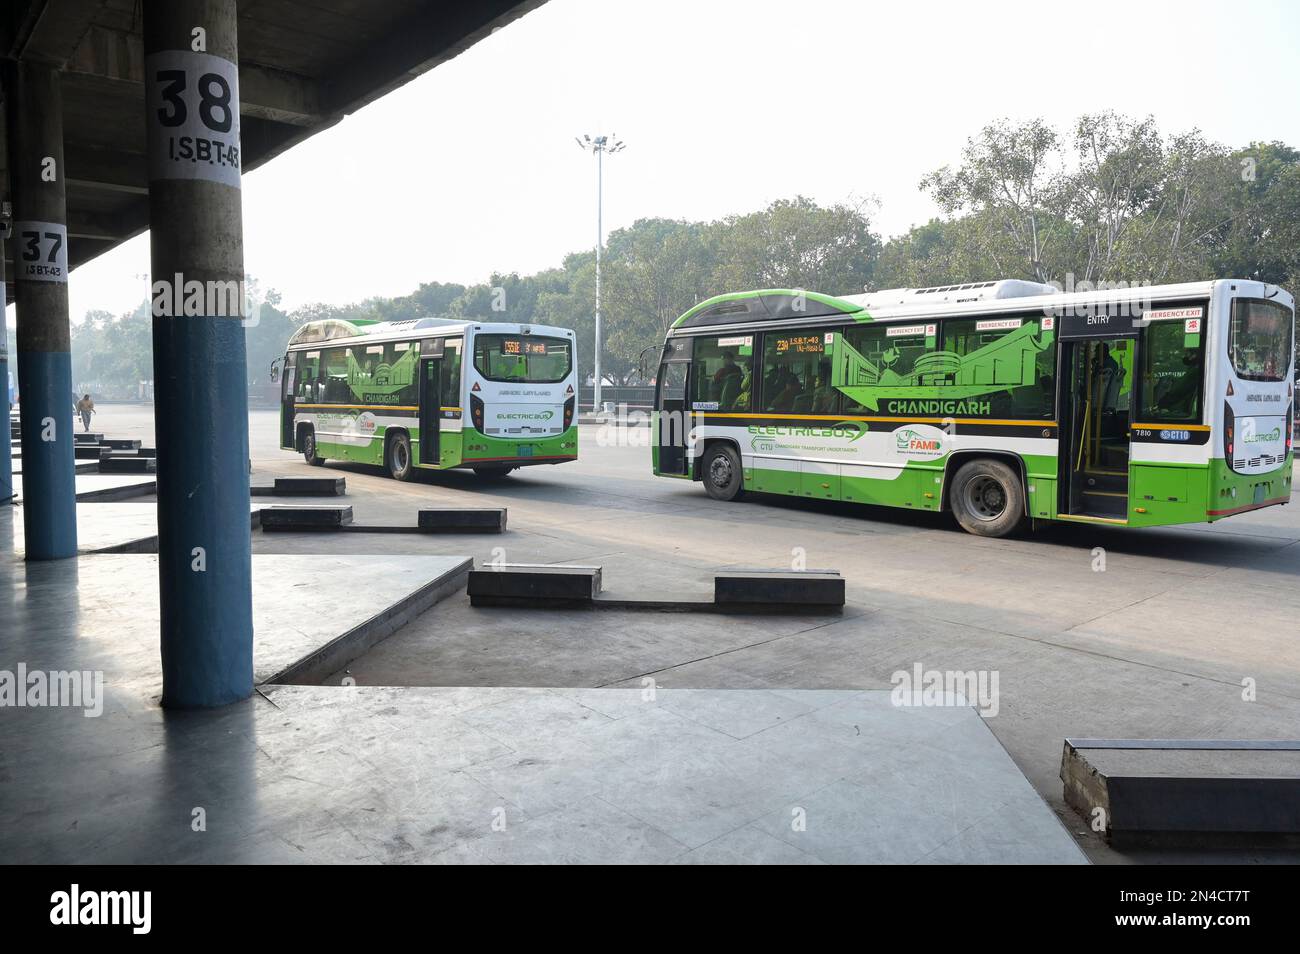 INDE, Chandigarh, secteur 17, terminal de bus Inter State, Ashok Leyland bus électrique pour les transports publics dans la ville, urbanisme dans les secteurs conçus par le Corbusier dans le 1950' Banque D'Images